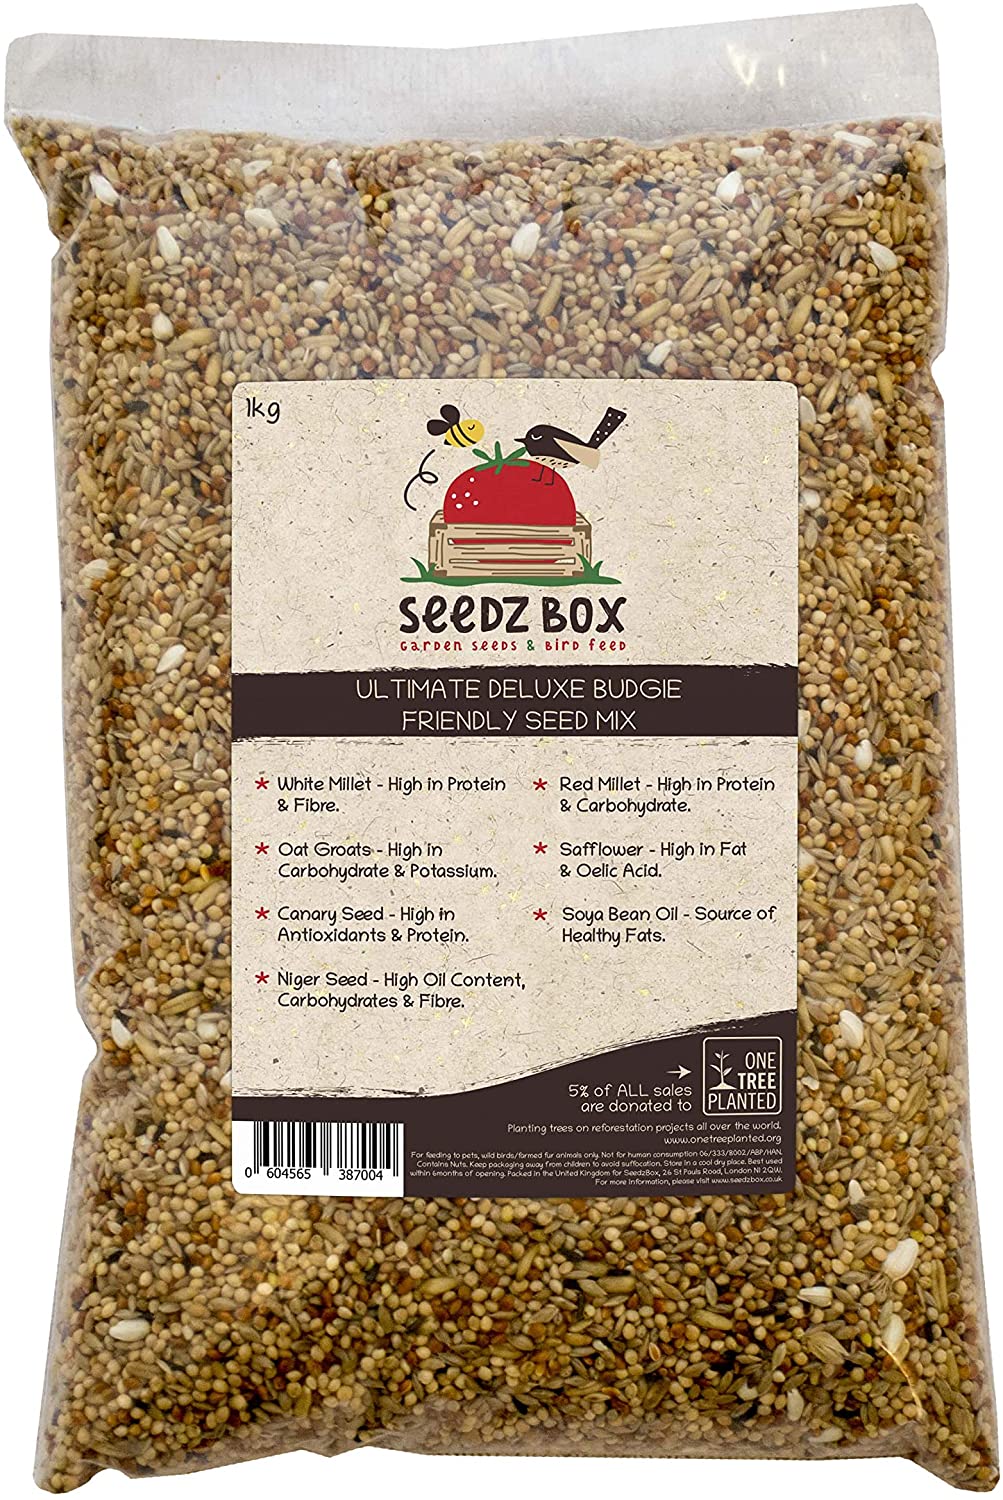  SeedzBox Mezcla Premium de semillas para periquitos. Comida para aves. Dieta equilibrada -alpiste, mijo blanco/ rojo, avena y negrillo, de alta calidad y saludable. Alto en proteína y fibra. Bolsa 1kg 